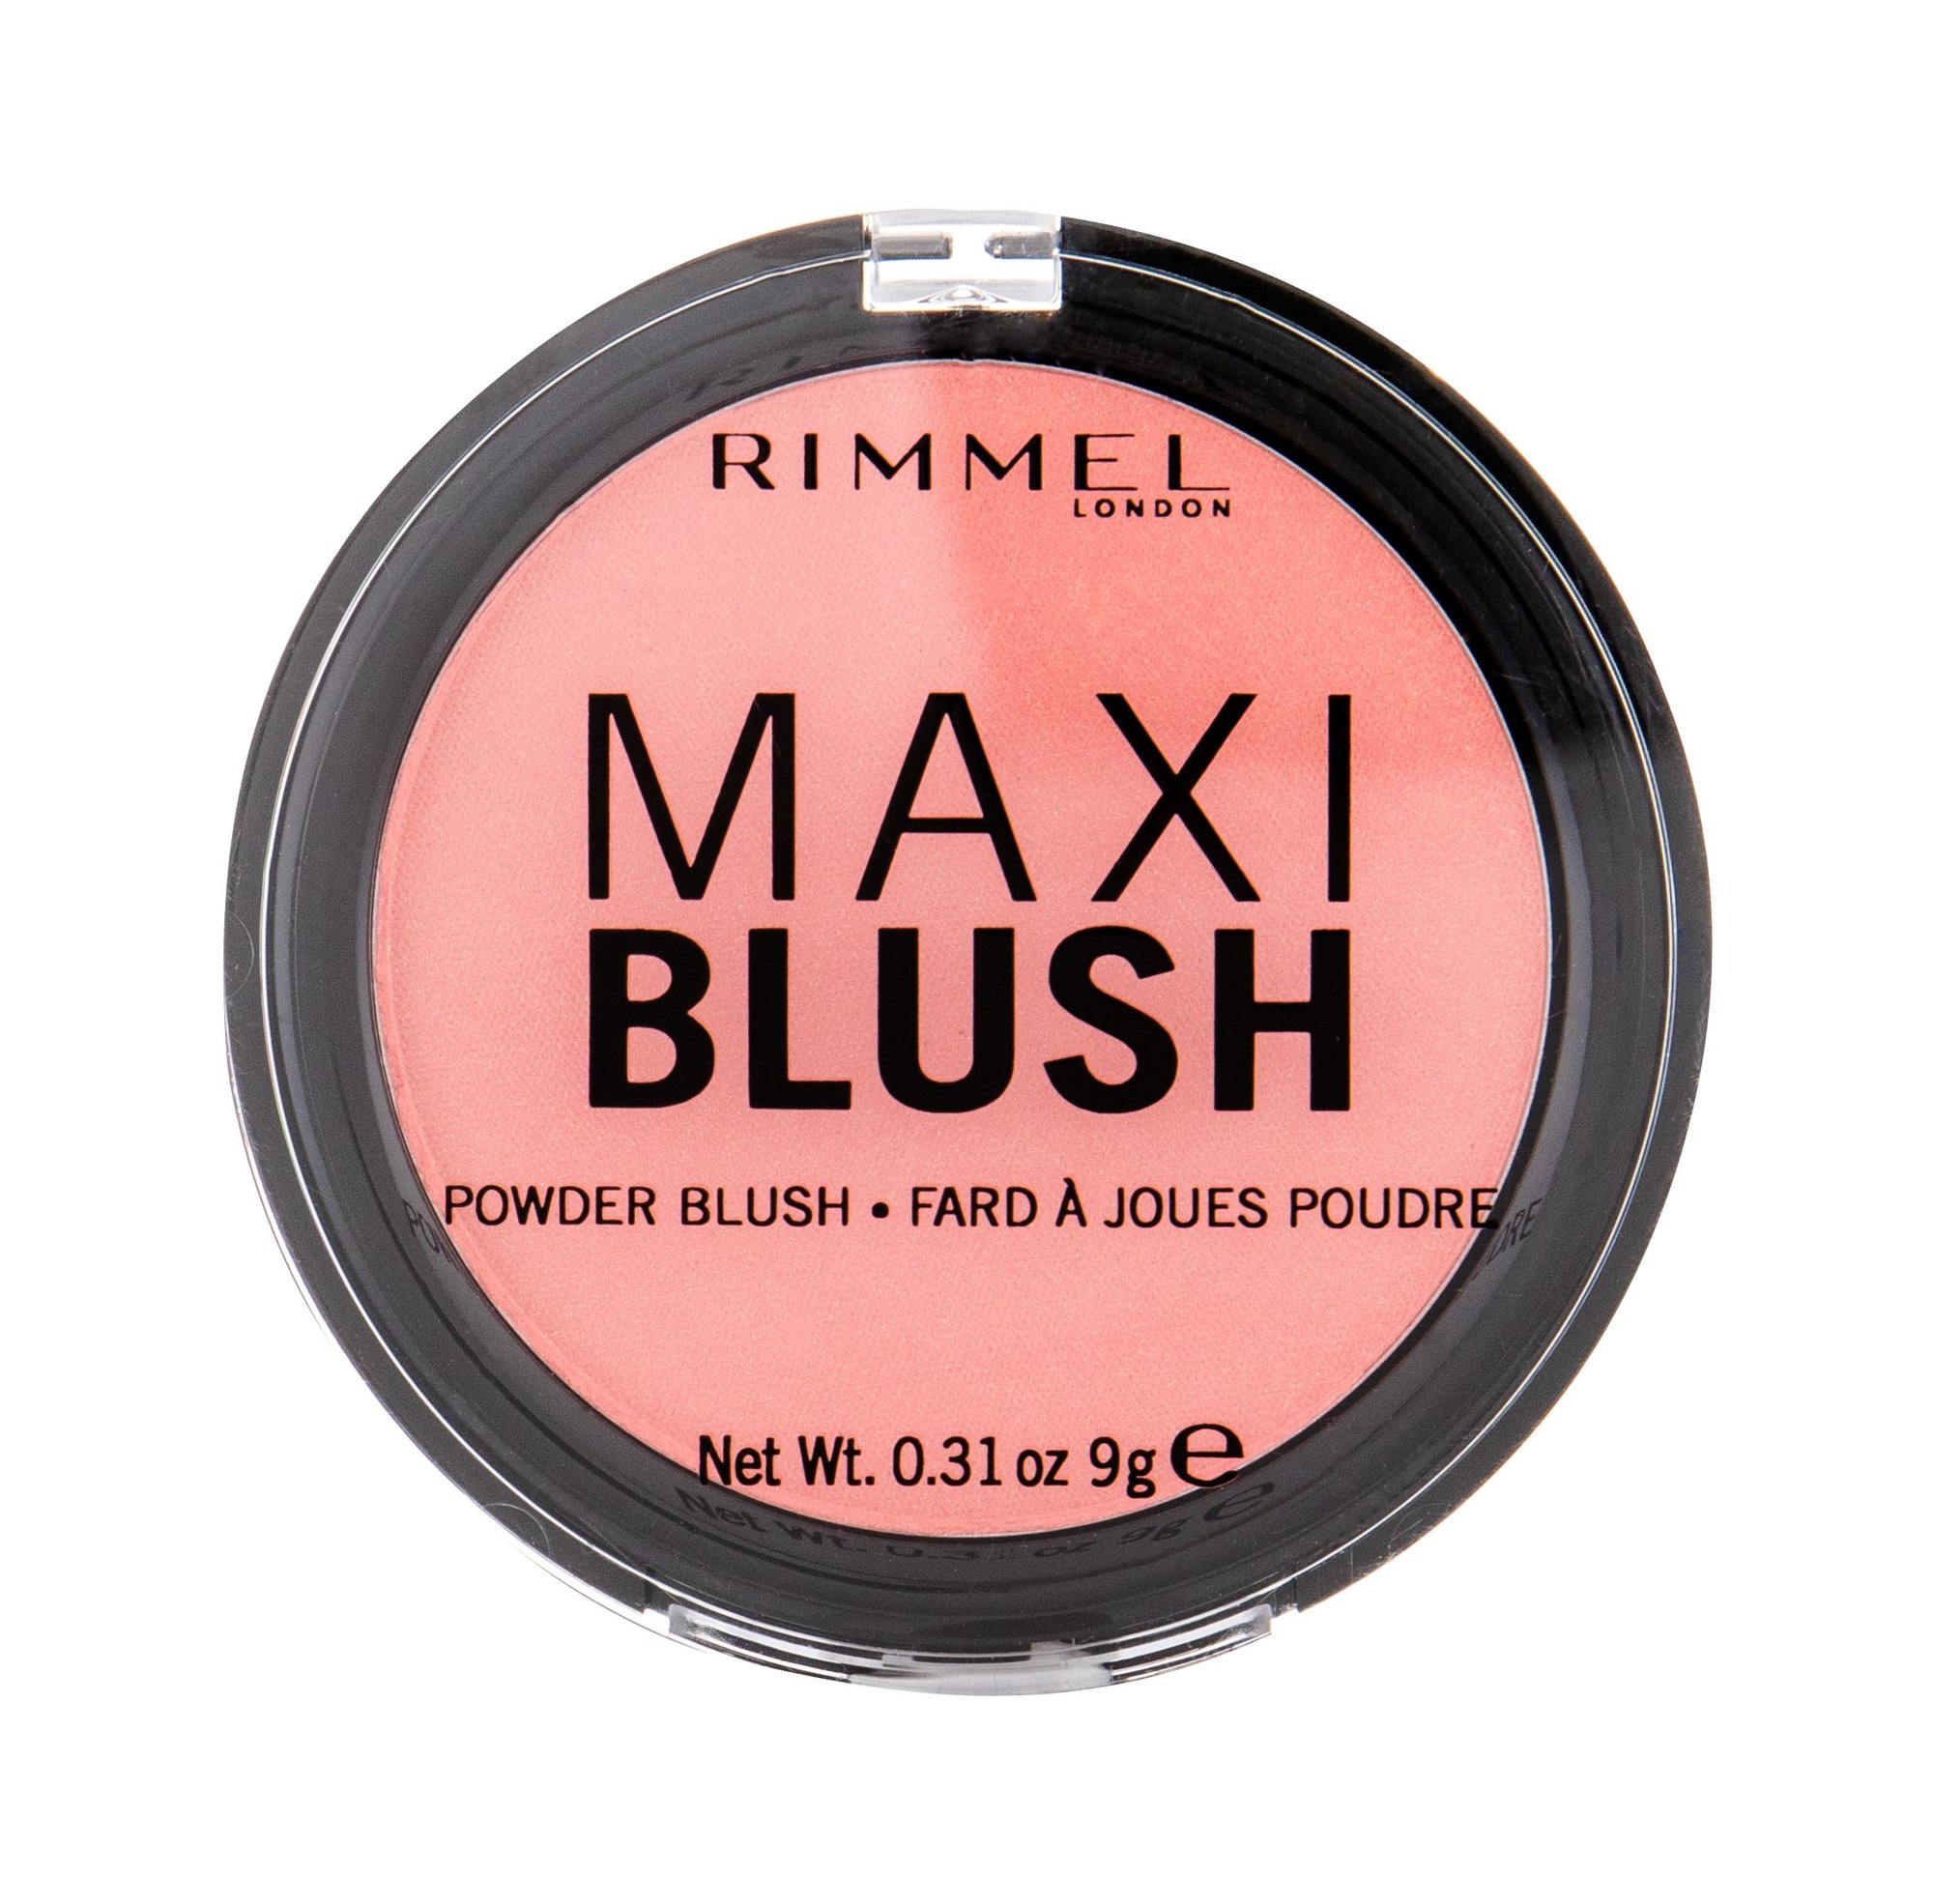 Rimmel London Maxi Blush 9g skaistalai